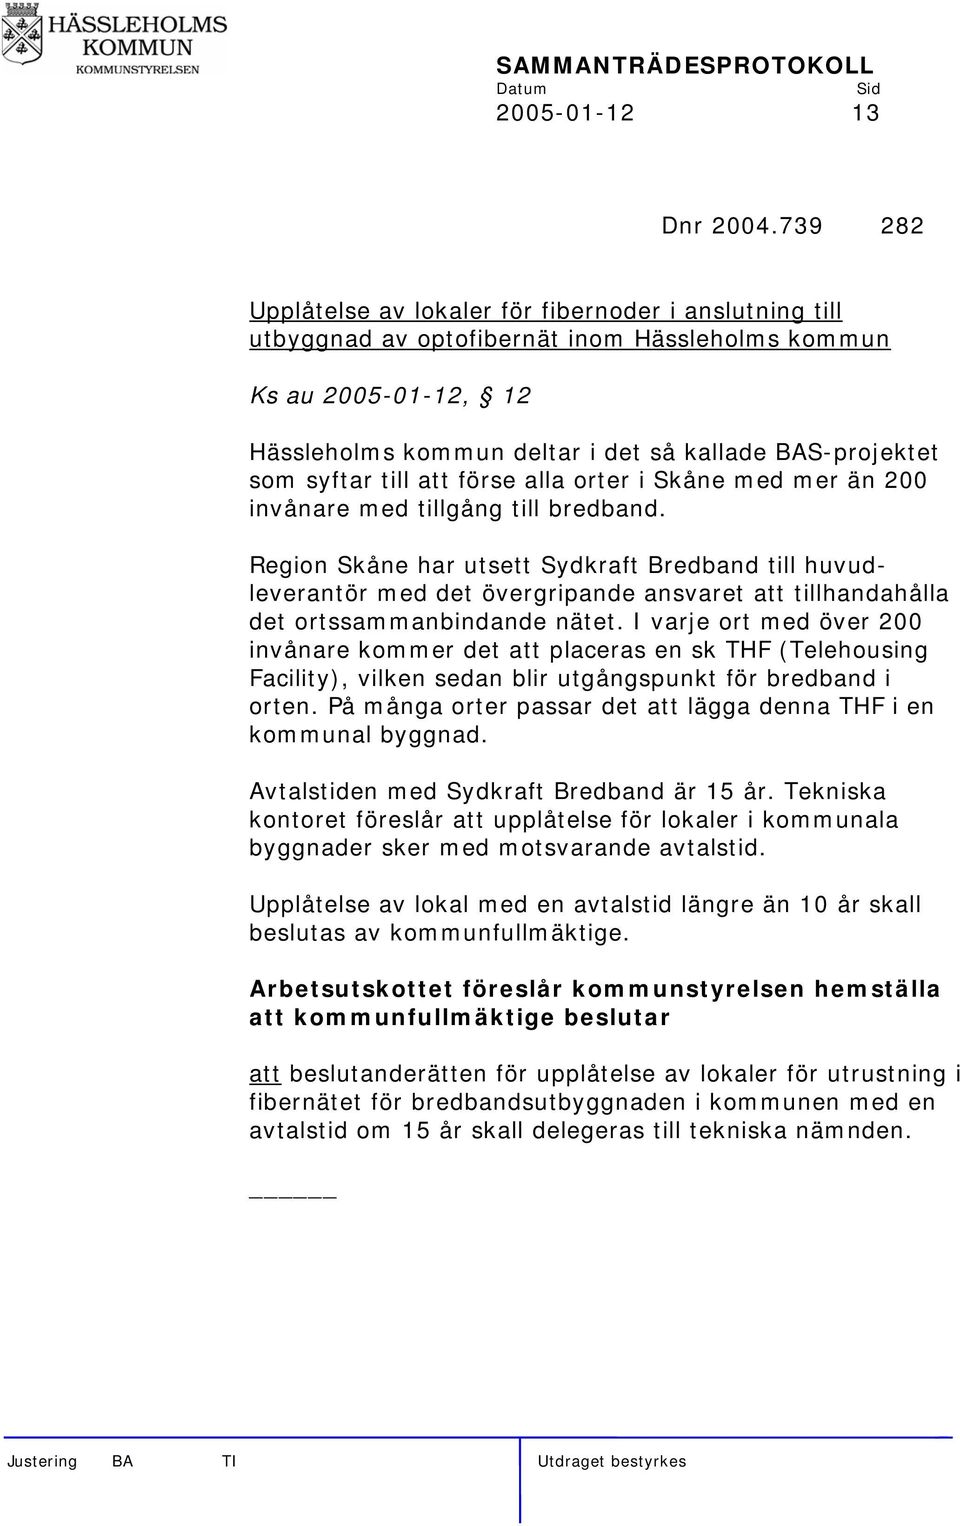 syftar till att förse alla orter i Skåne med mer än 200 invånare med tillgång till bredband.